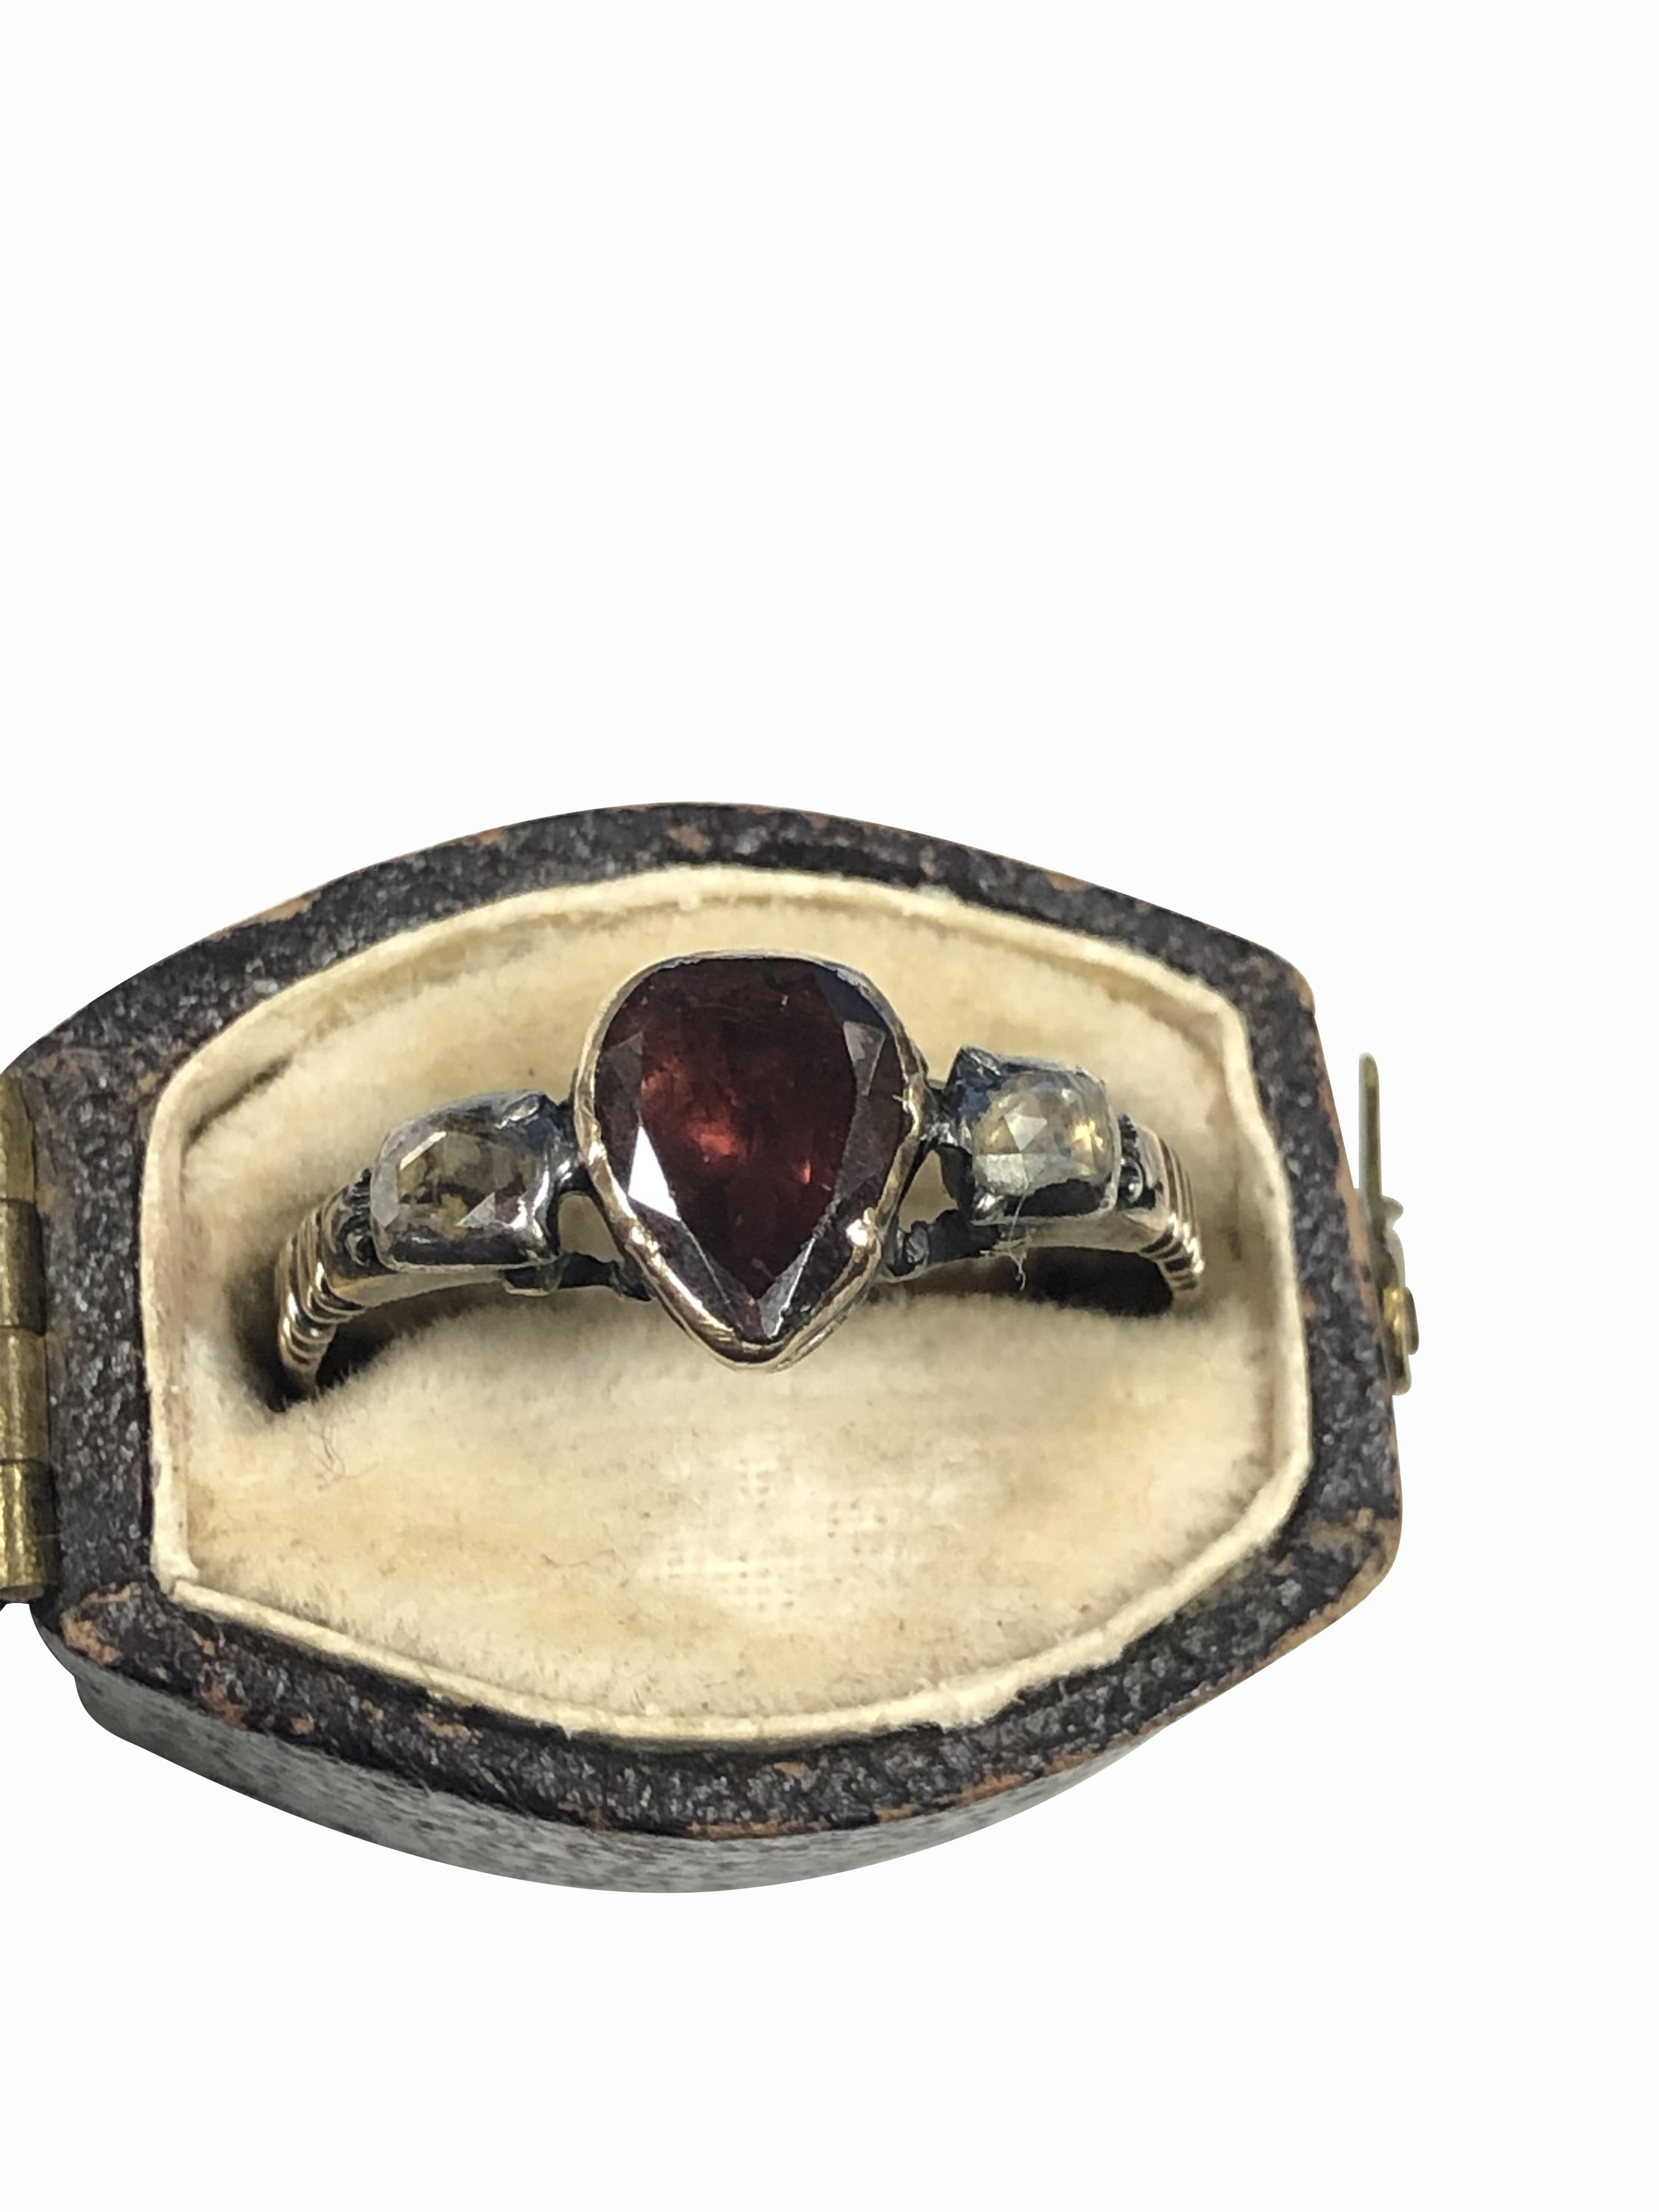 George III Georgian Gold Diamond and Garnet Ring in Original Box